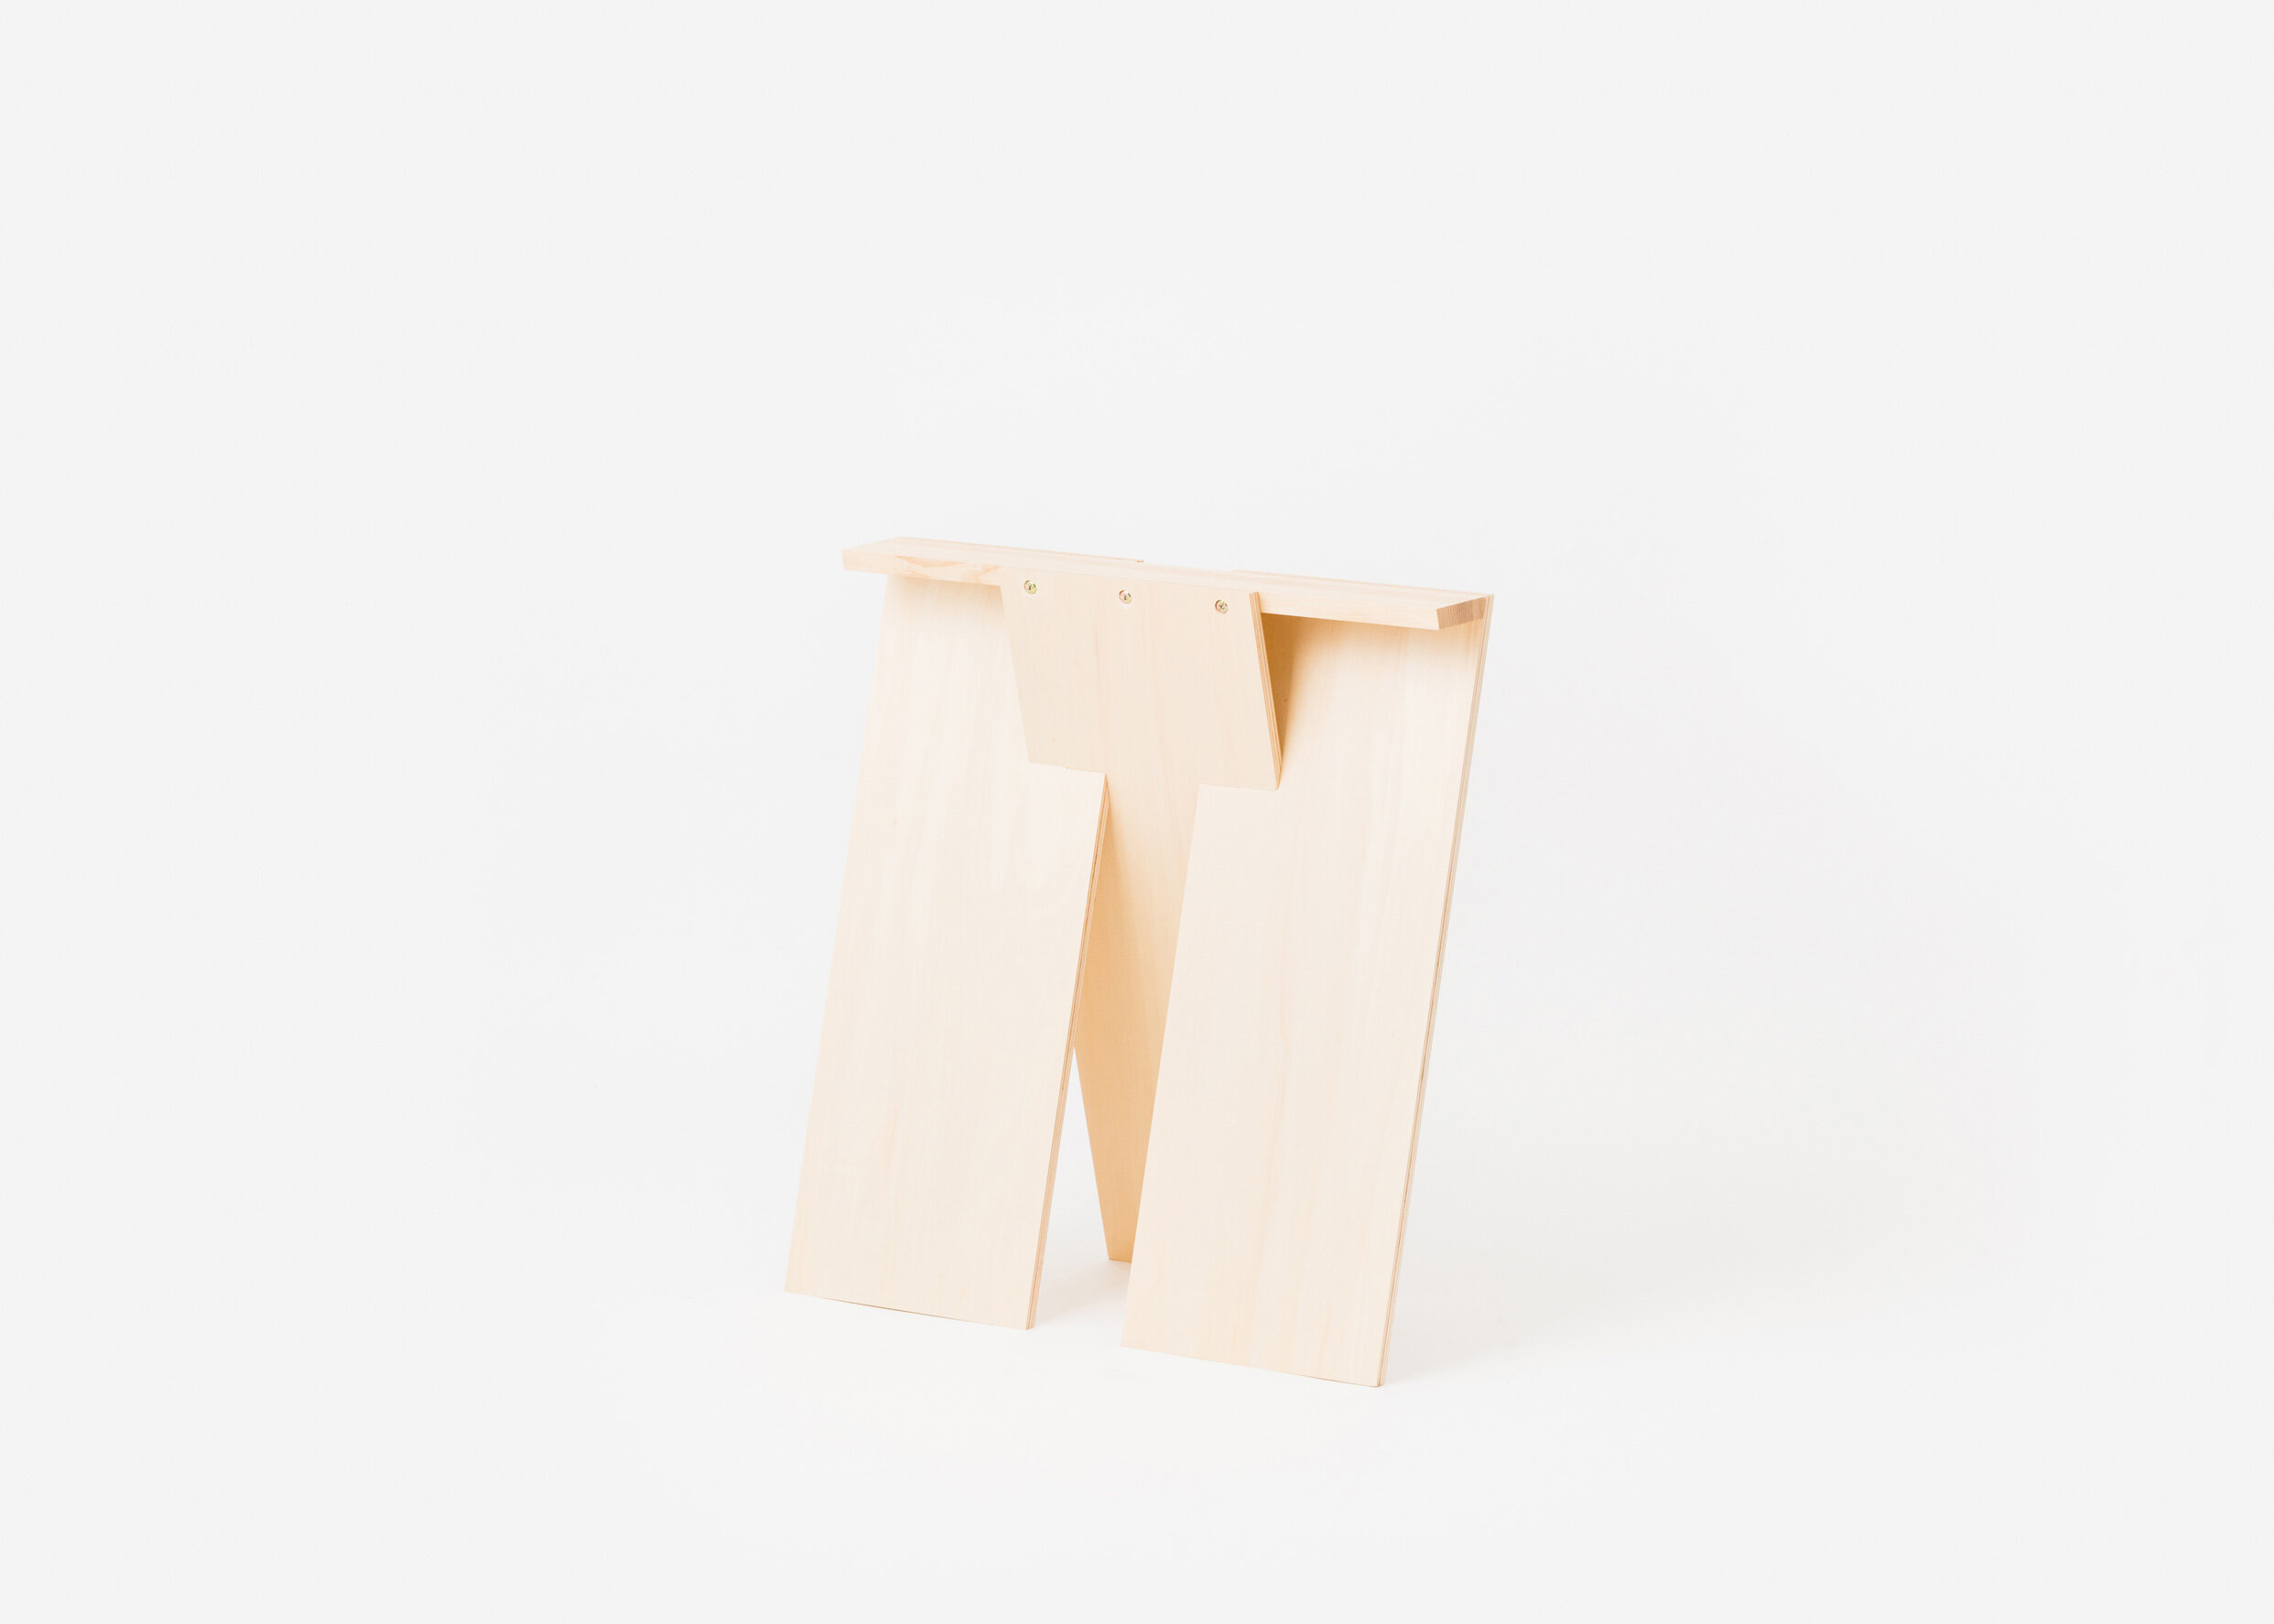 kodai-iwamoto-trestle-leg-furniture-design-idreit-75.jpg